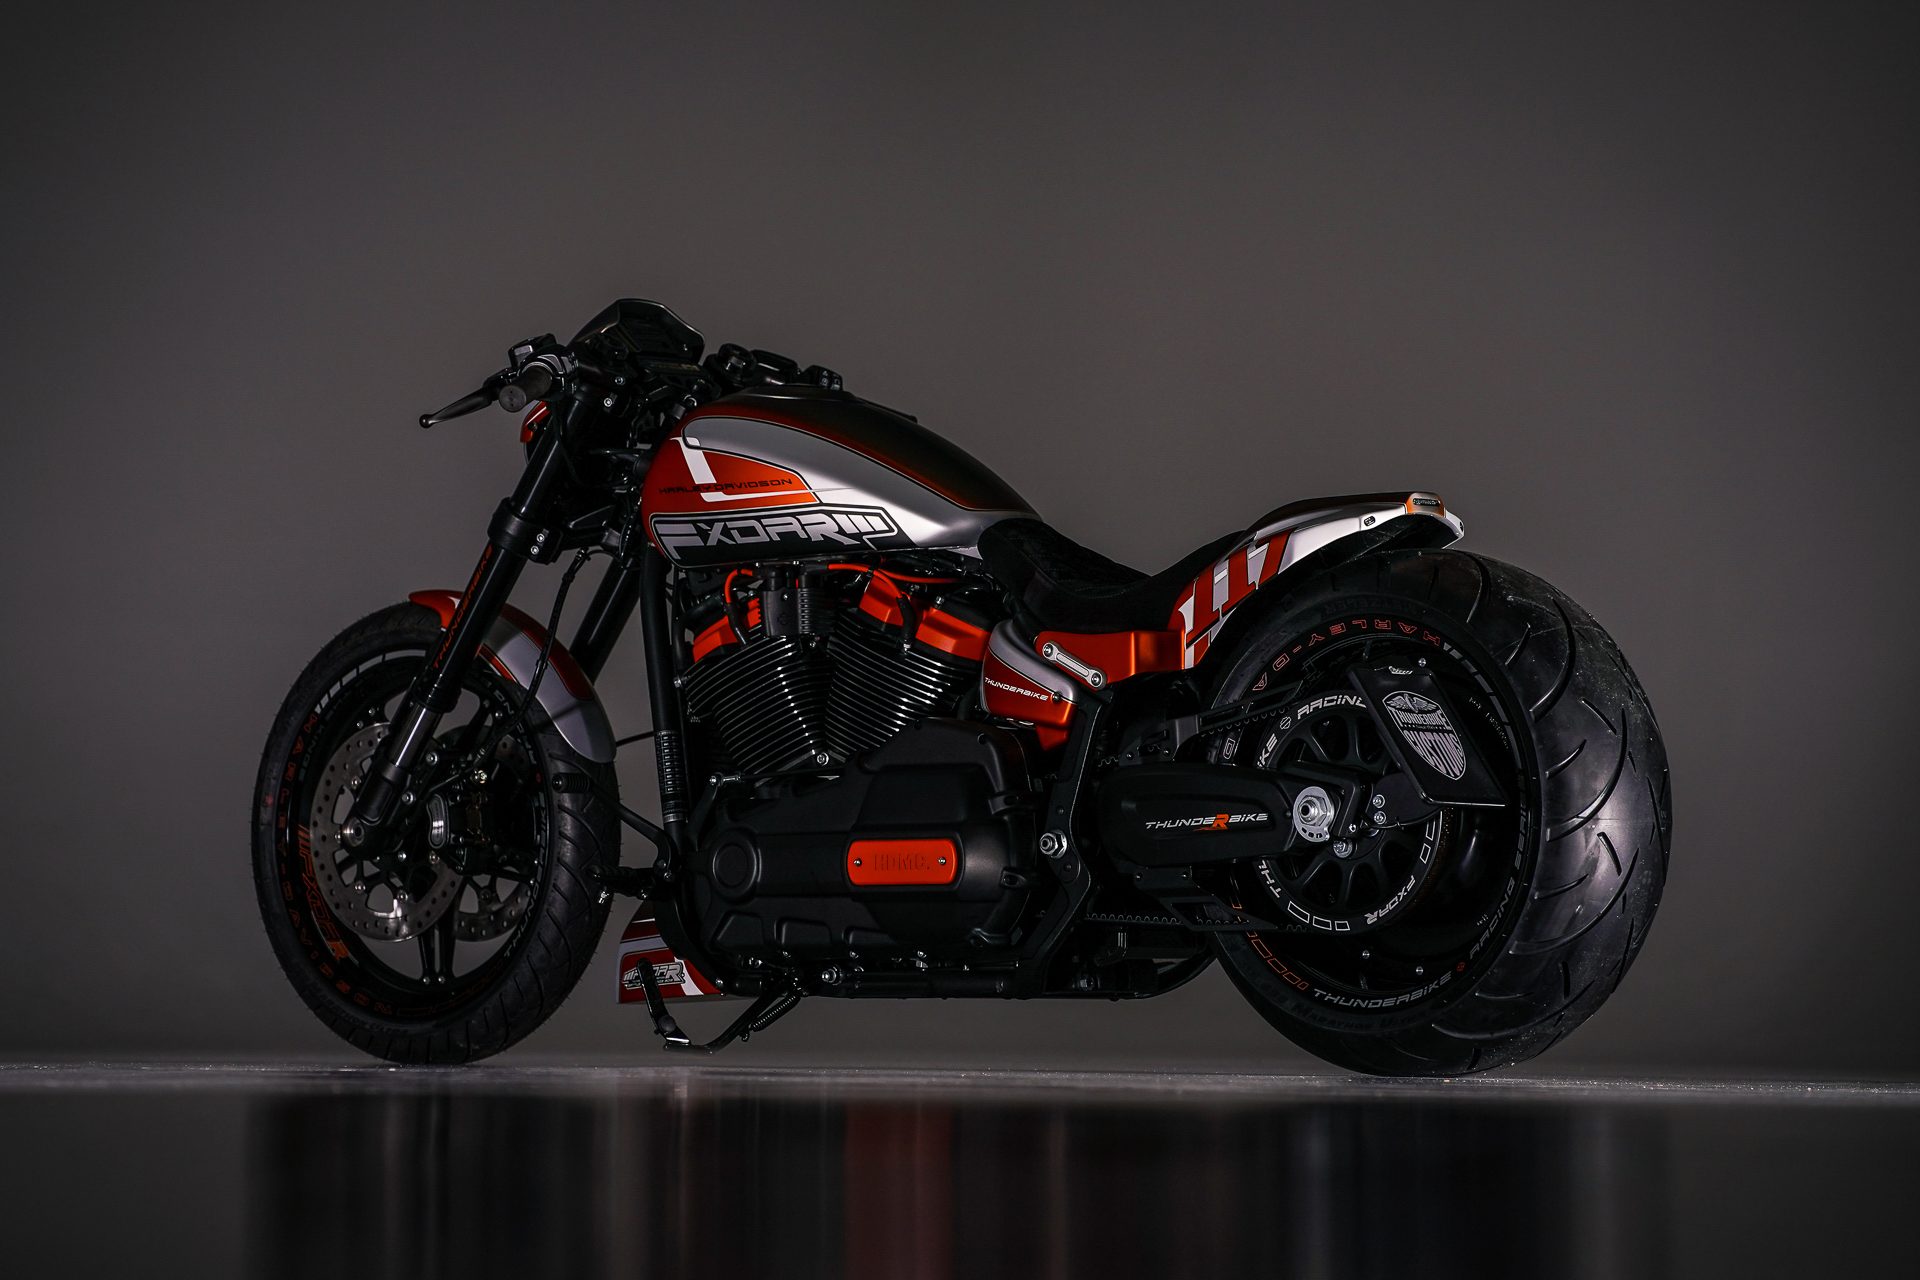 Harley davidson thunderbike customs